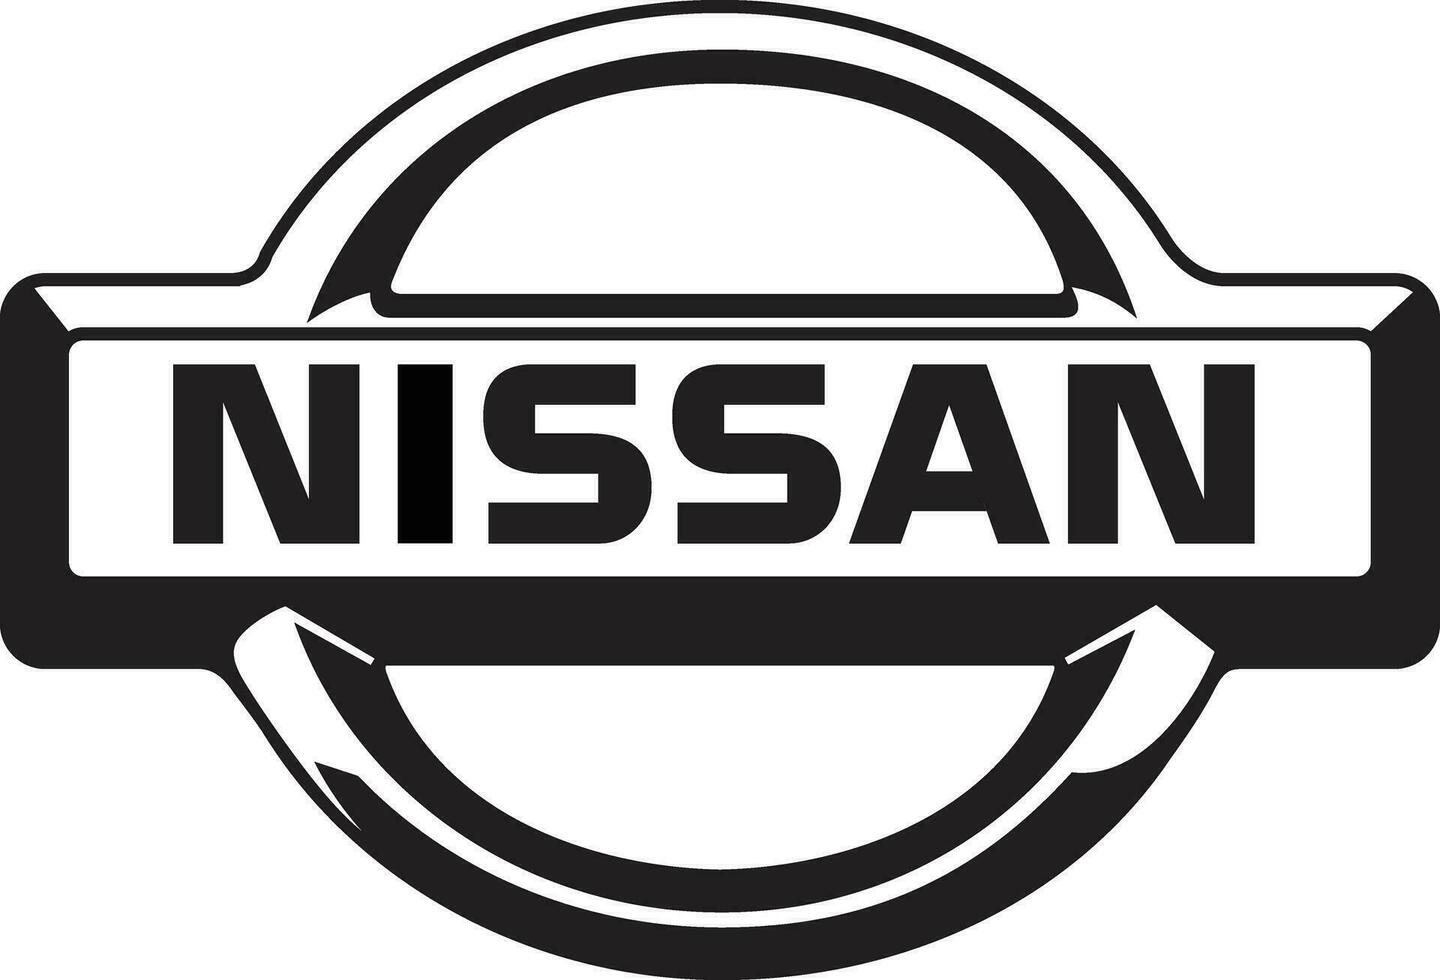 Ankara turkiye 19 Juli 2023 Nissan Auto Marke Logo Marke vektor